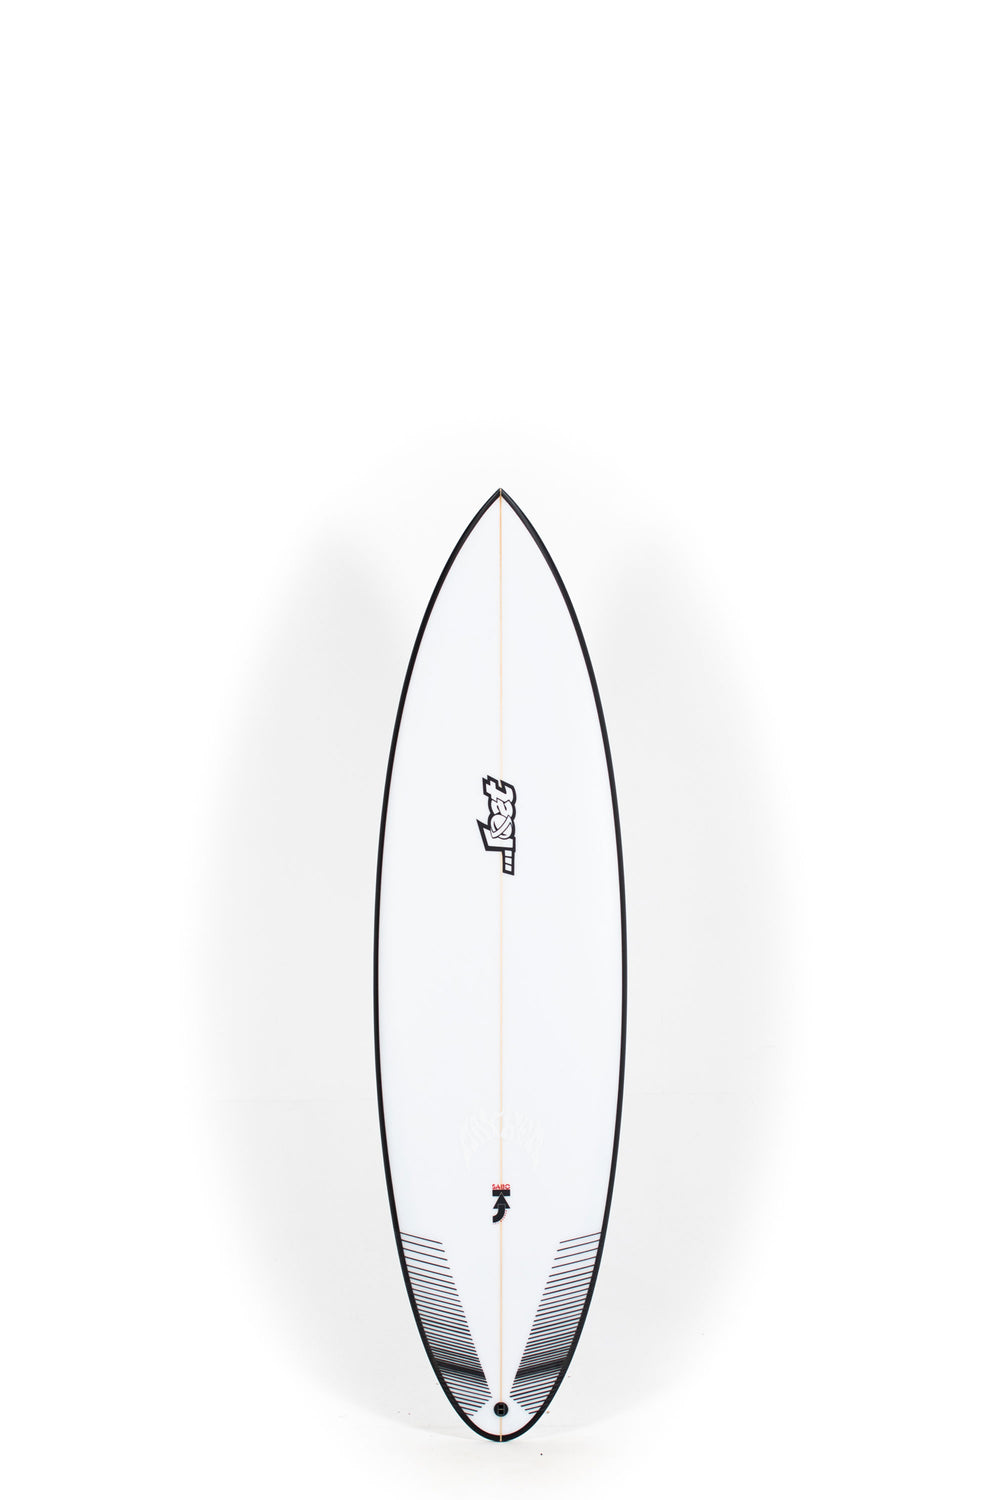 Pukas Surf Shop - Lost Surfboard - SABO TAJ by Matt Biolos - 5’11” x 19,13 x 2,44 x 30L - MH16066